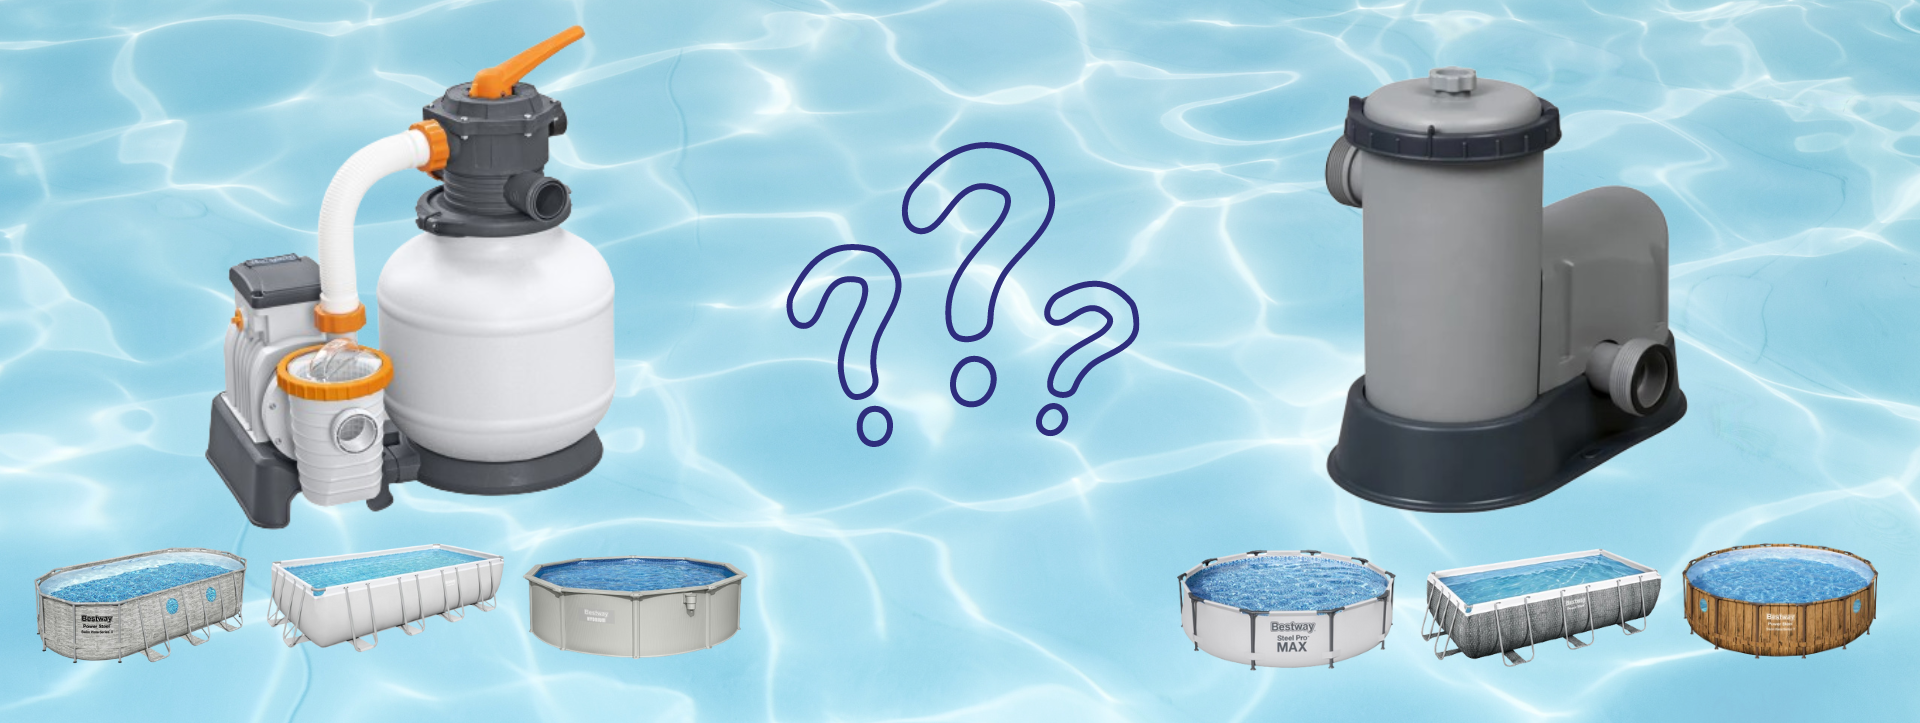 Choisir la pompe de filtration idéale pour sa piscine hors sol